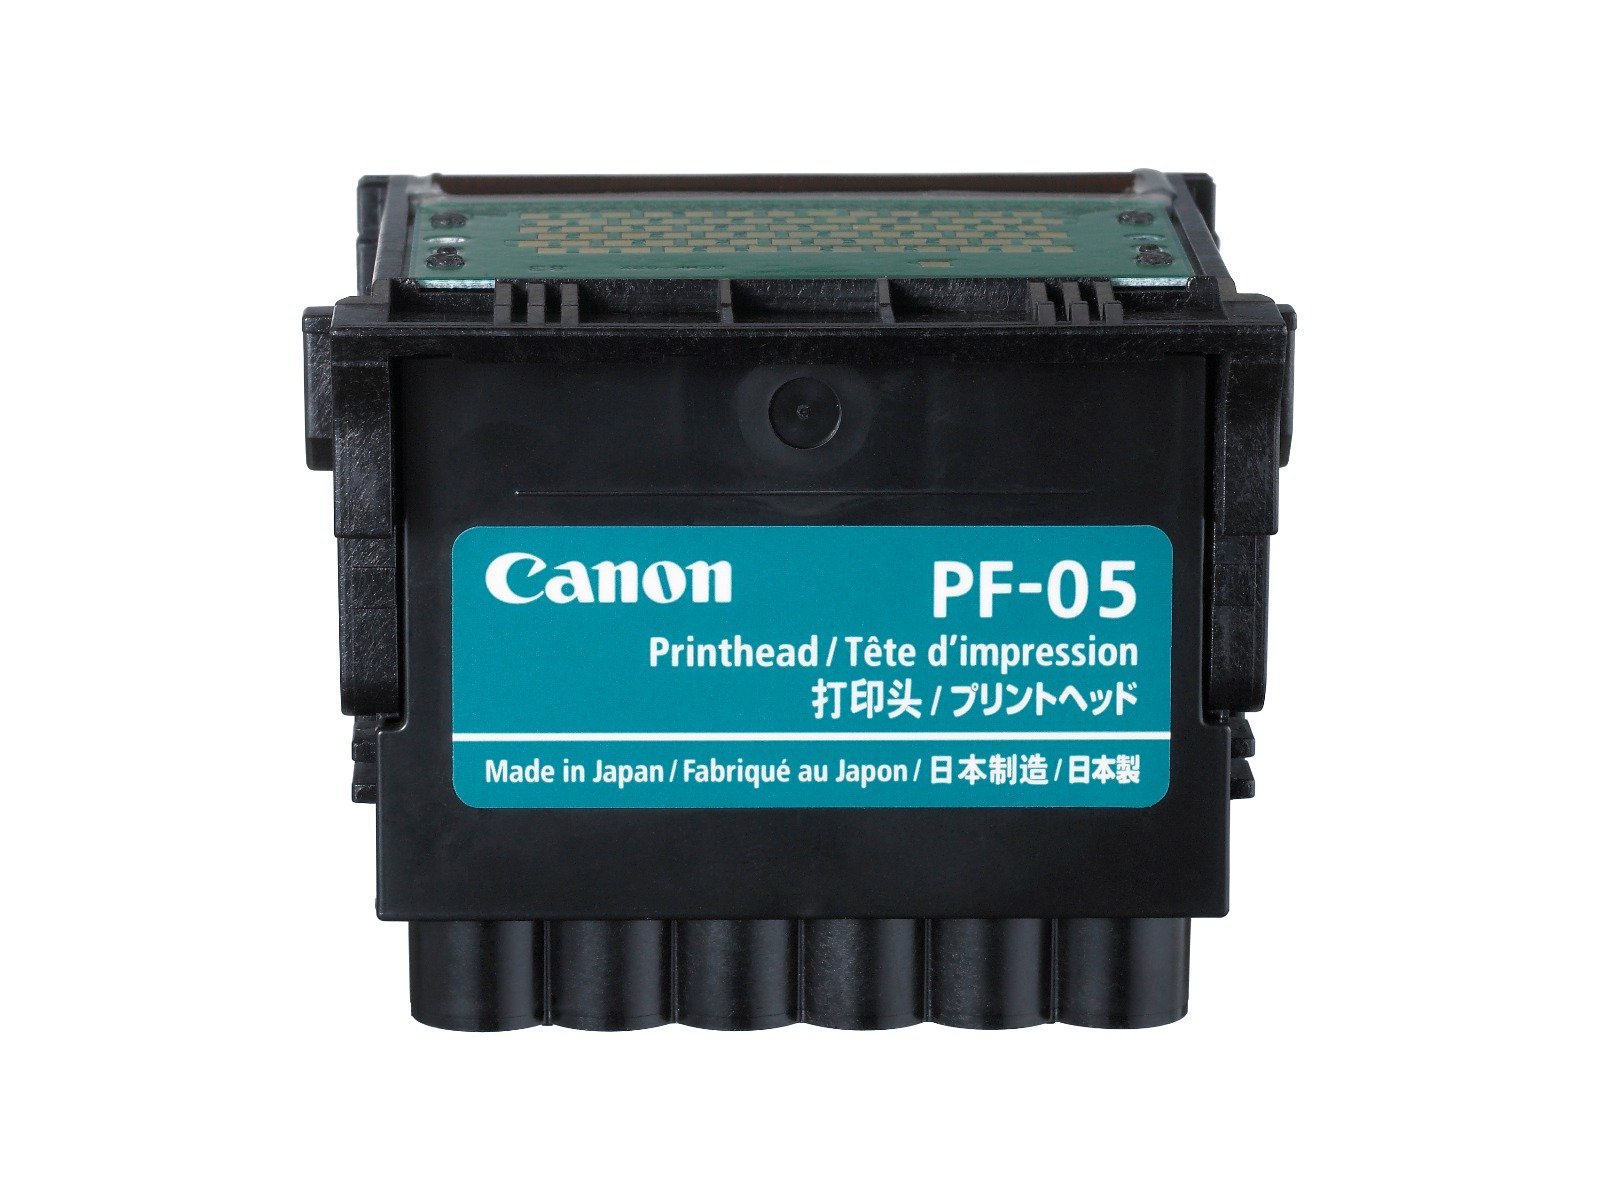 Печатающая головка Canon PF-05 печатающая головка printhead 81 yellow c4953a